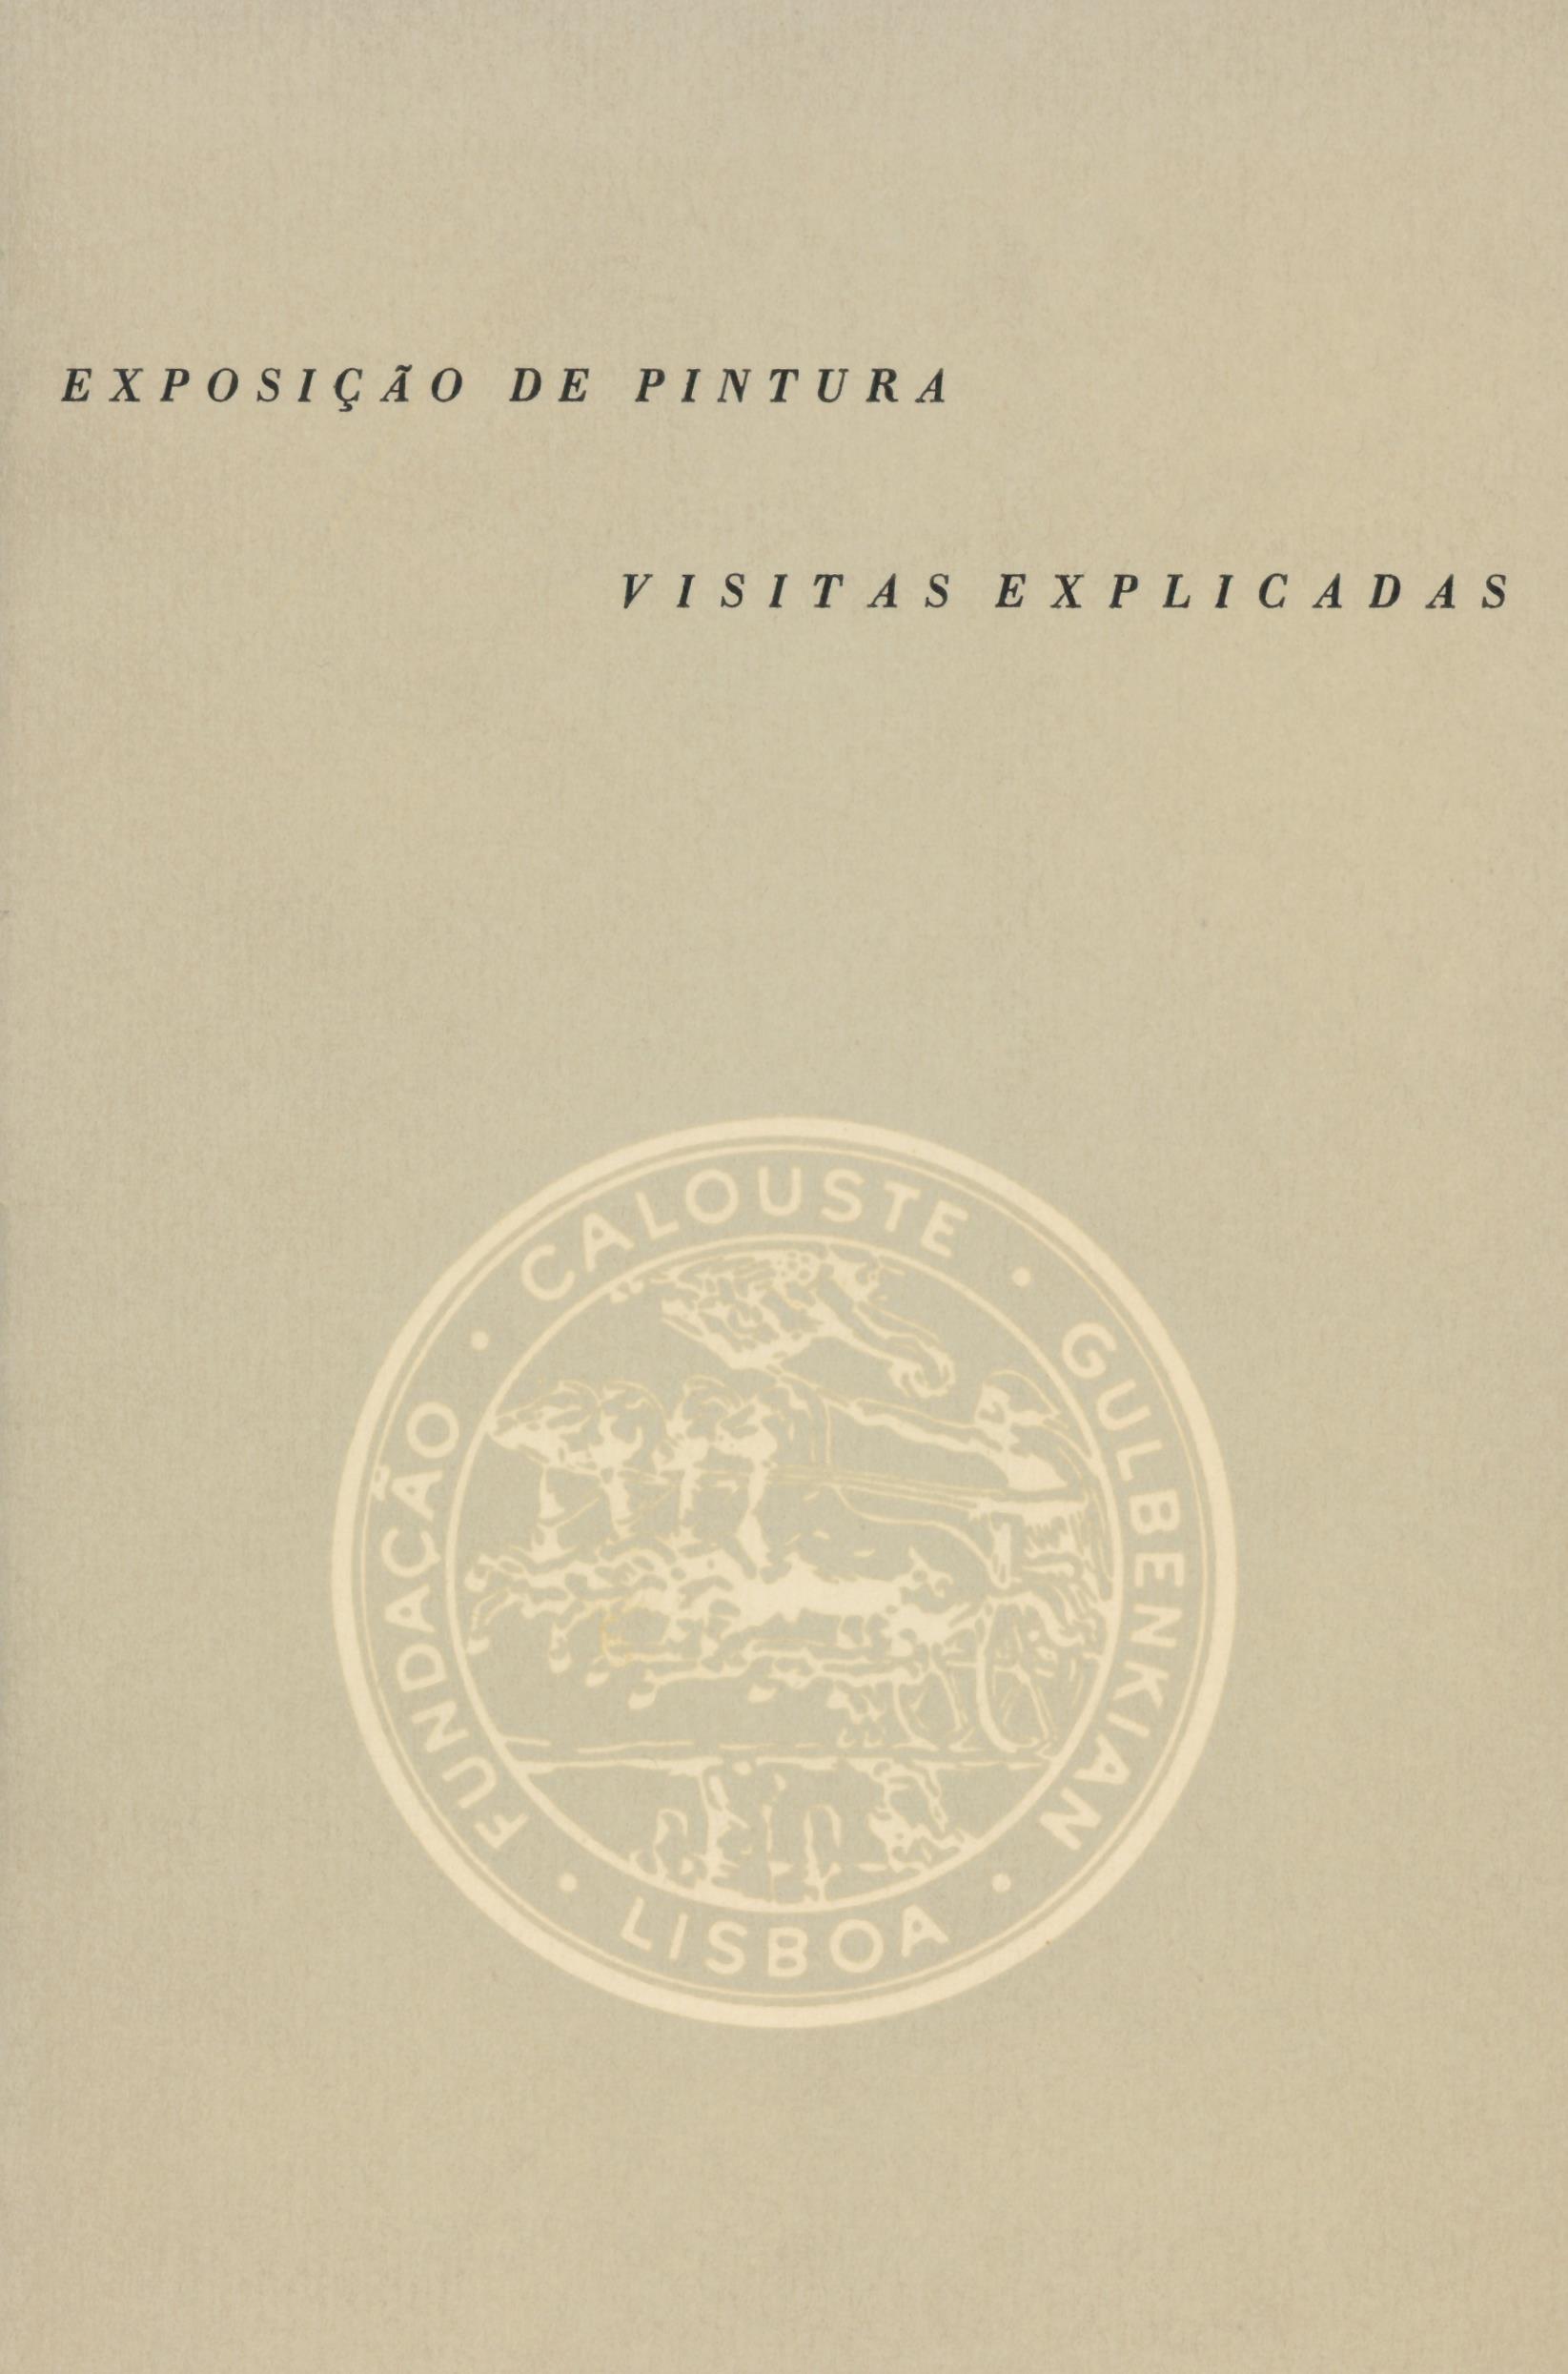 1961_Exposicao_de_Pintura_Visitas_Explicadas_catalogo_capa_P13854